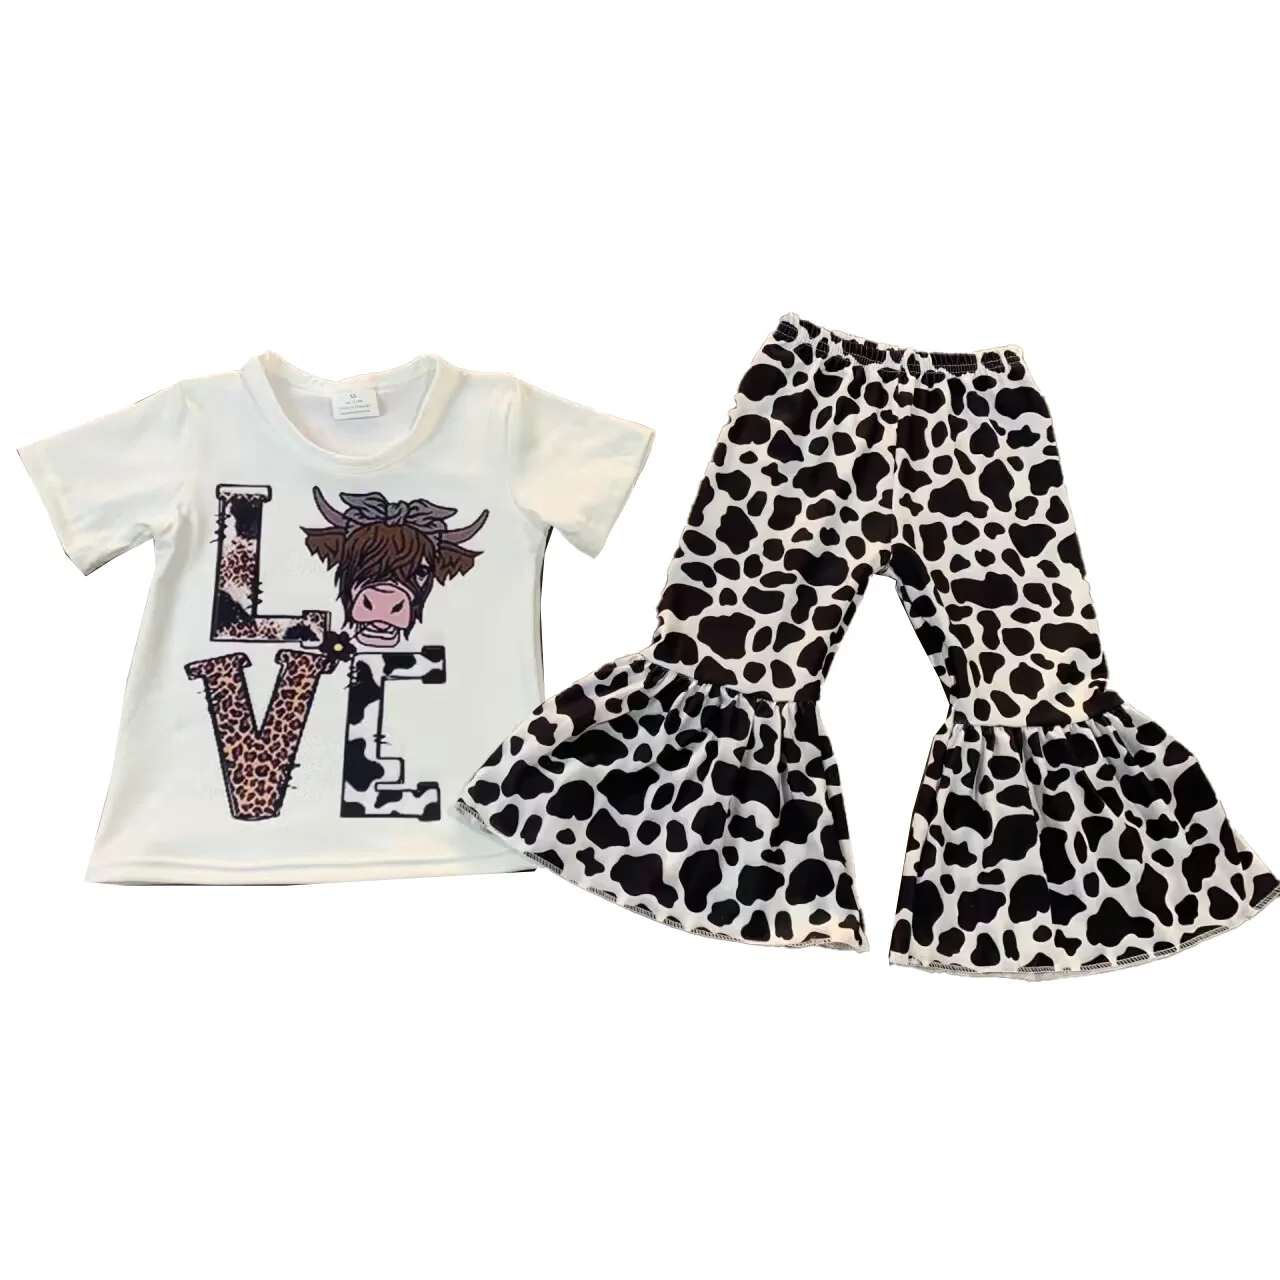 

Комплект одежды для девочек из бутика, штаны с леопардовым принтом в виде колокольчиков, одежда для сред, оптовая продажа